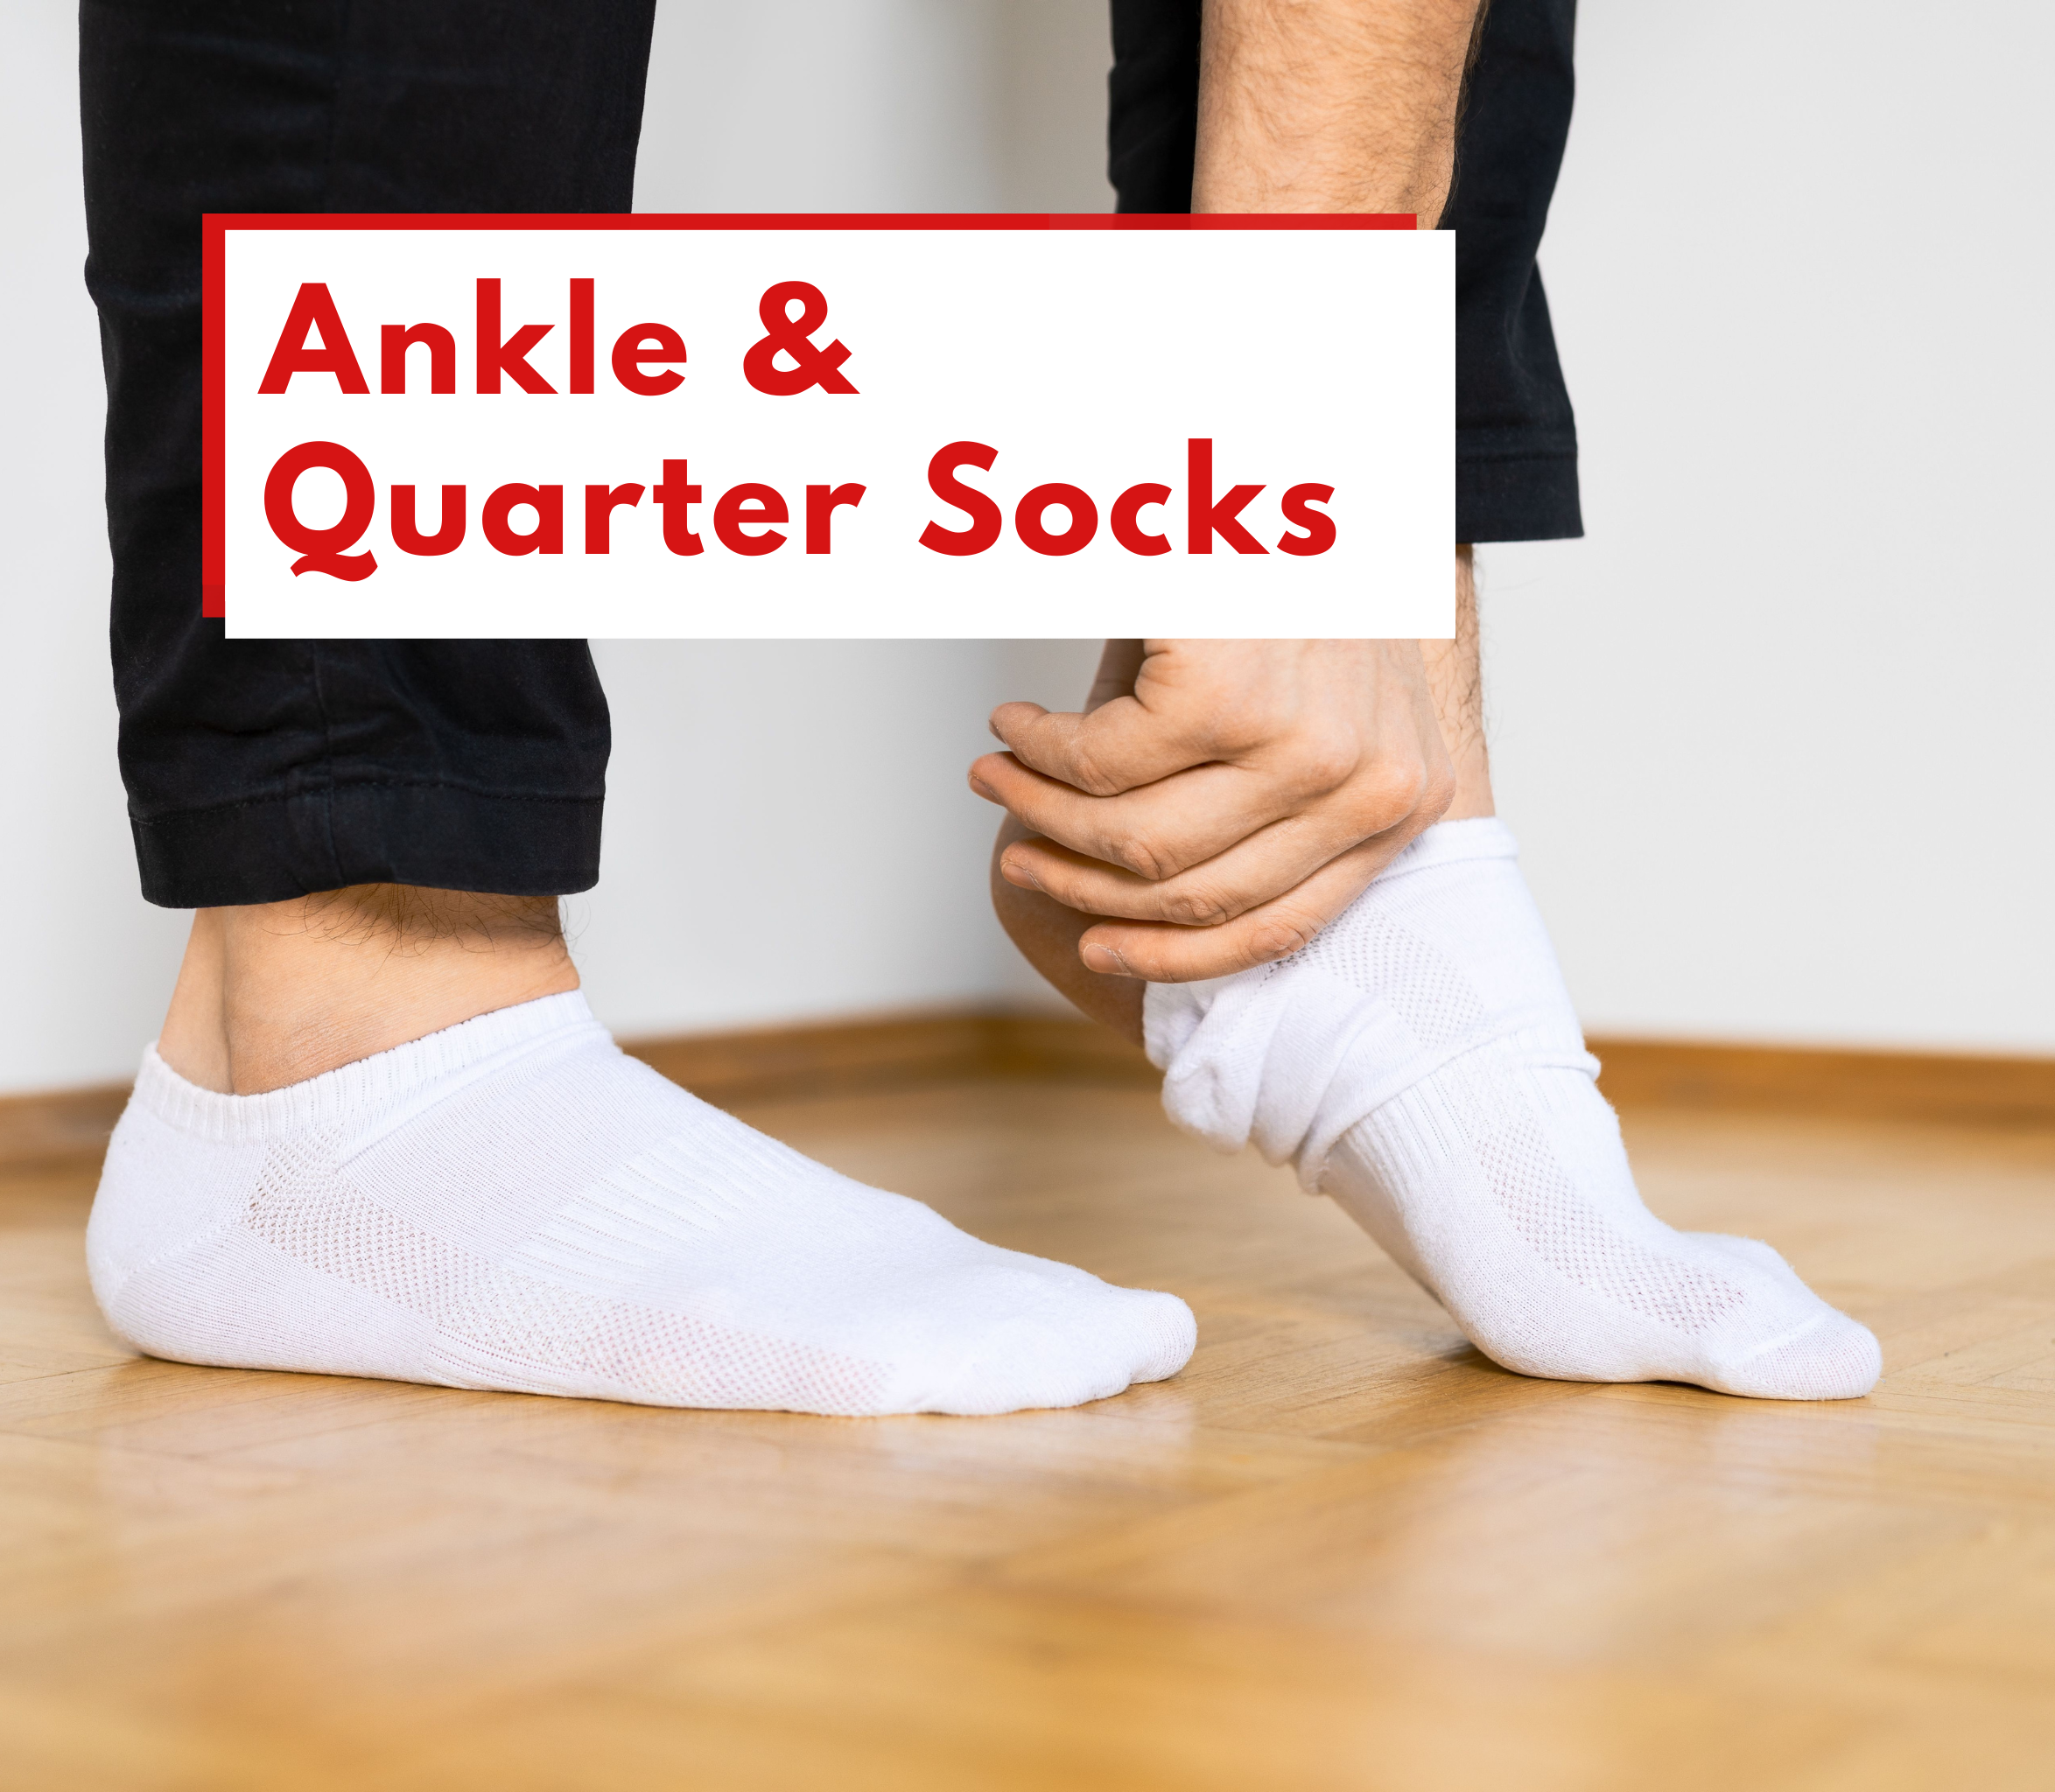 Ankle quarter